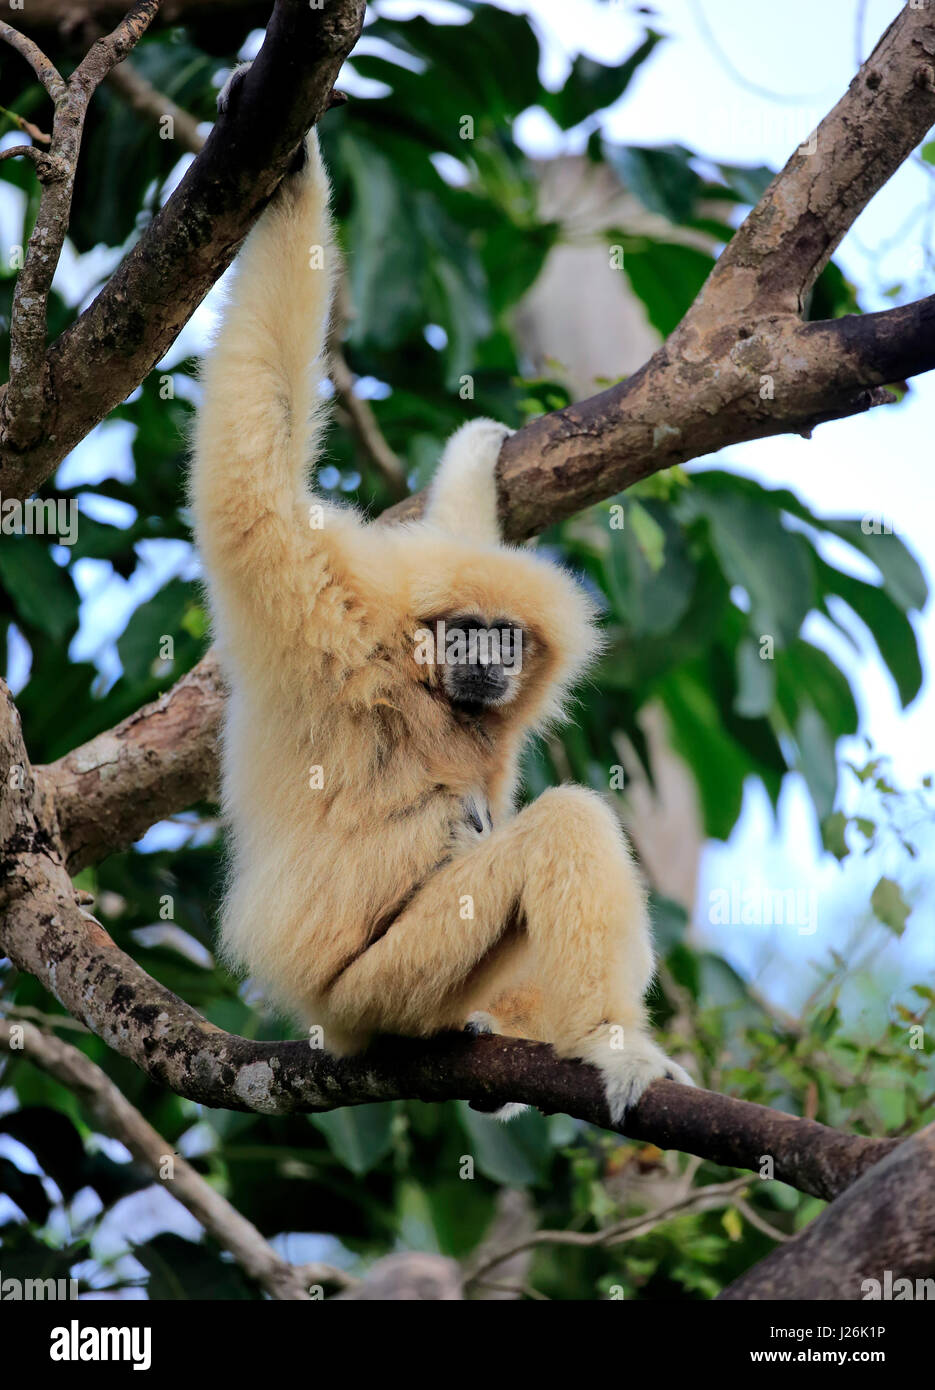 Main blanche, gibbon lar (Hylobates lar), femelle adulte sur arbre, survenue en Asie du sud-est, captive Banque D'Images